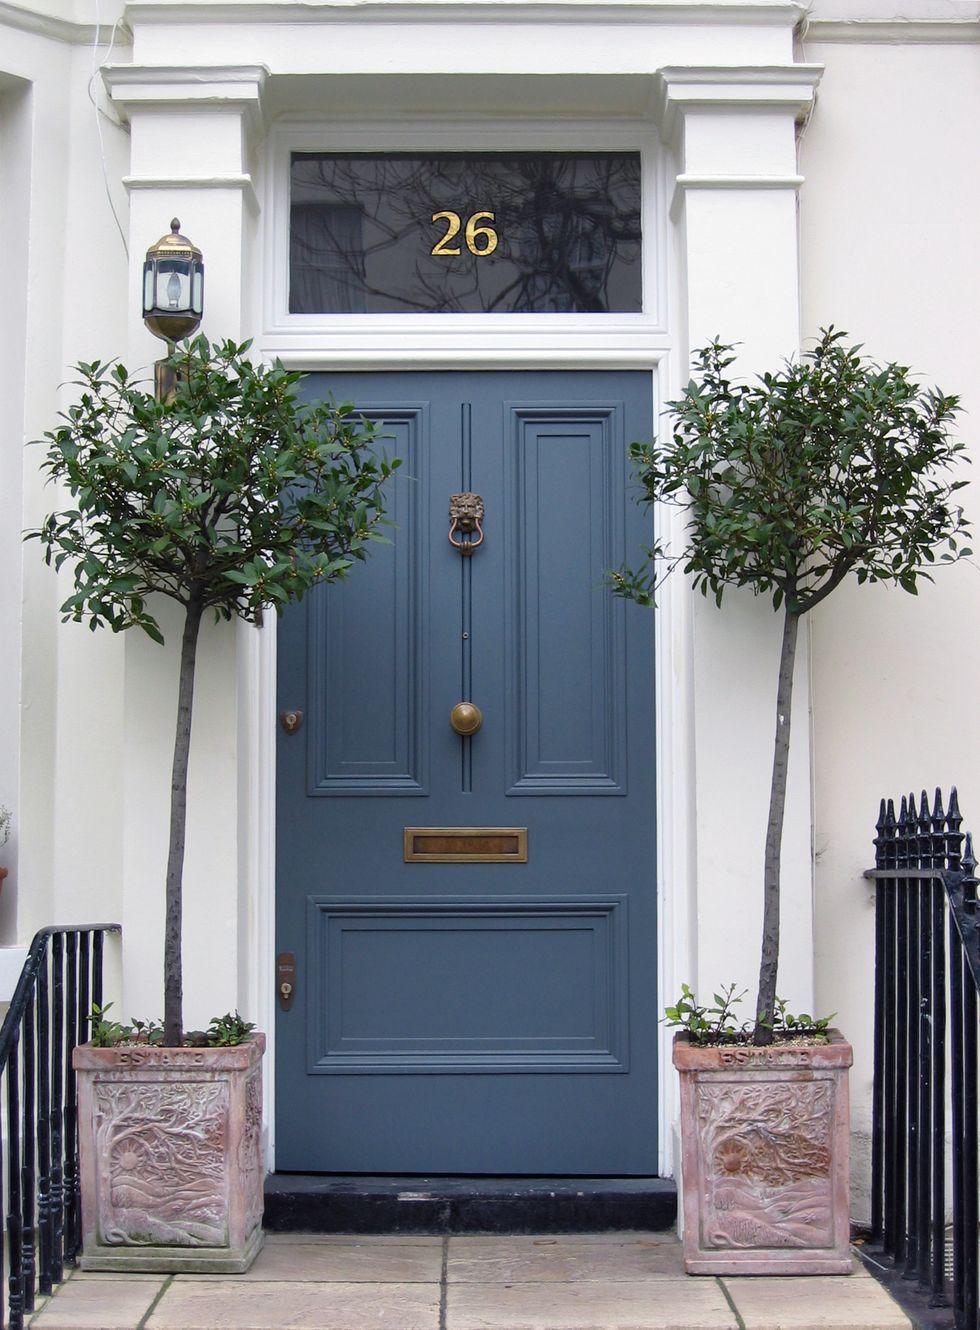 What colour should you paint your front door?